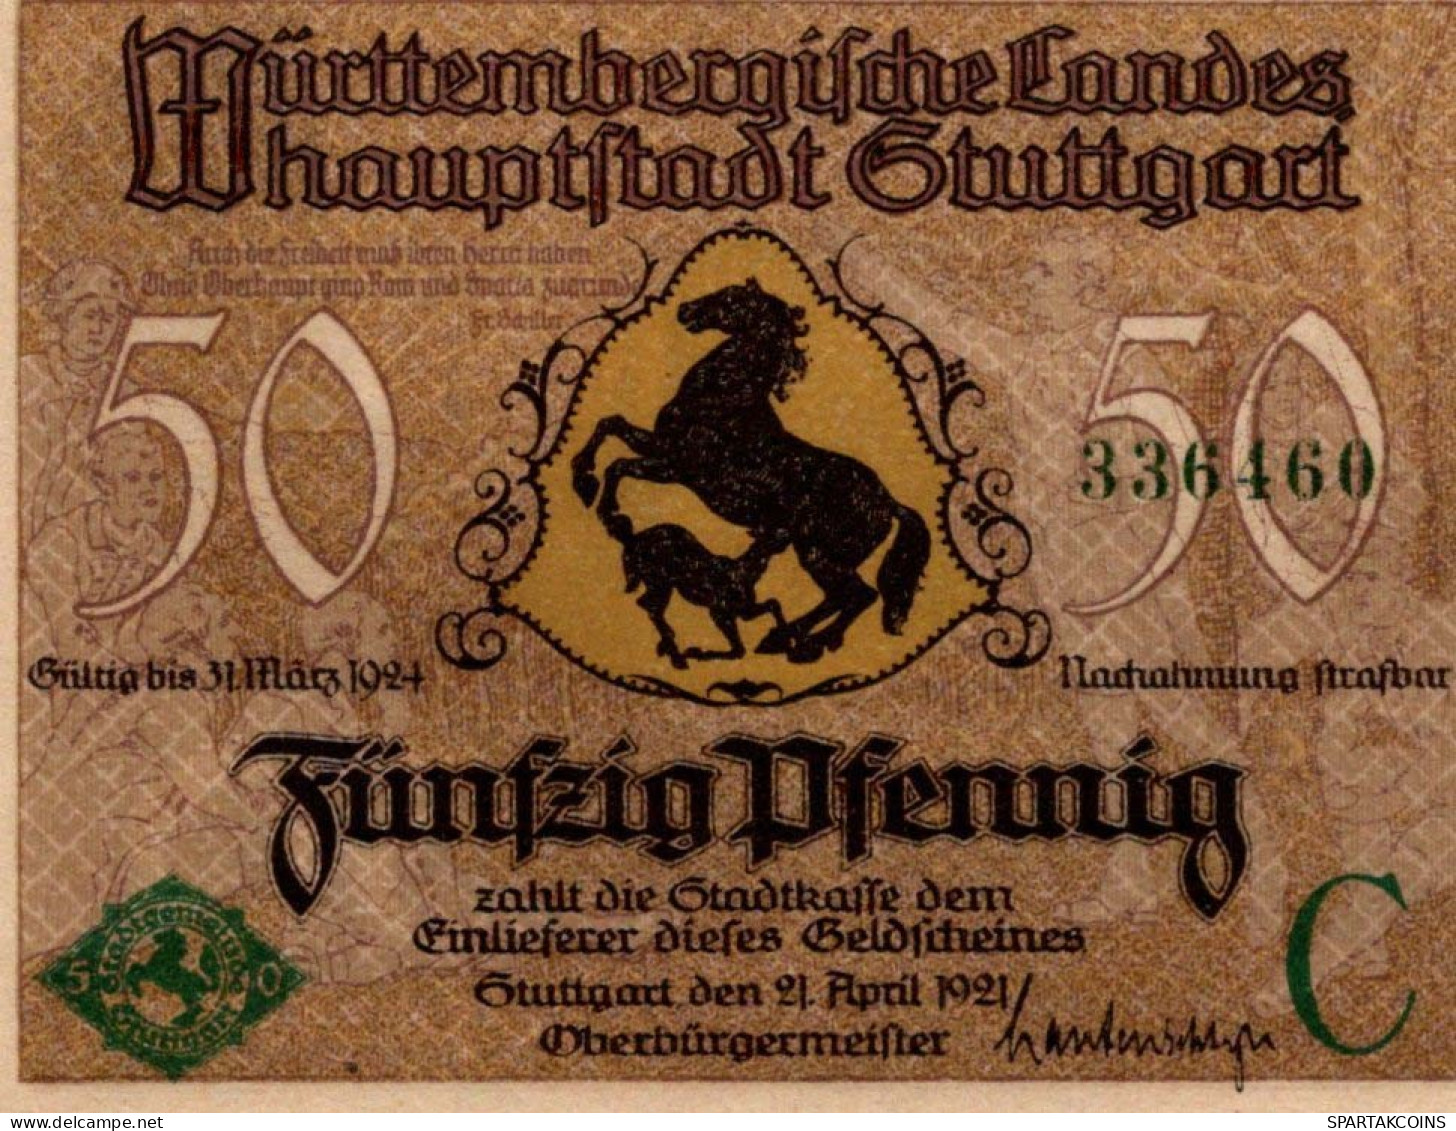 50 PFENNIG 1921 Stadt STUTTGART Württemberg UNC DEUTSCHLAND Notgeld #PC415 - [11] Emissioni Locali